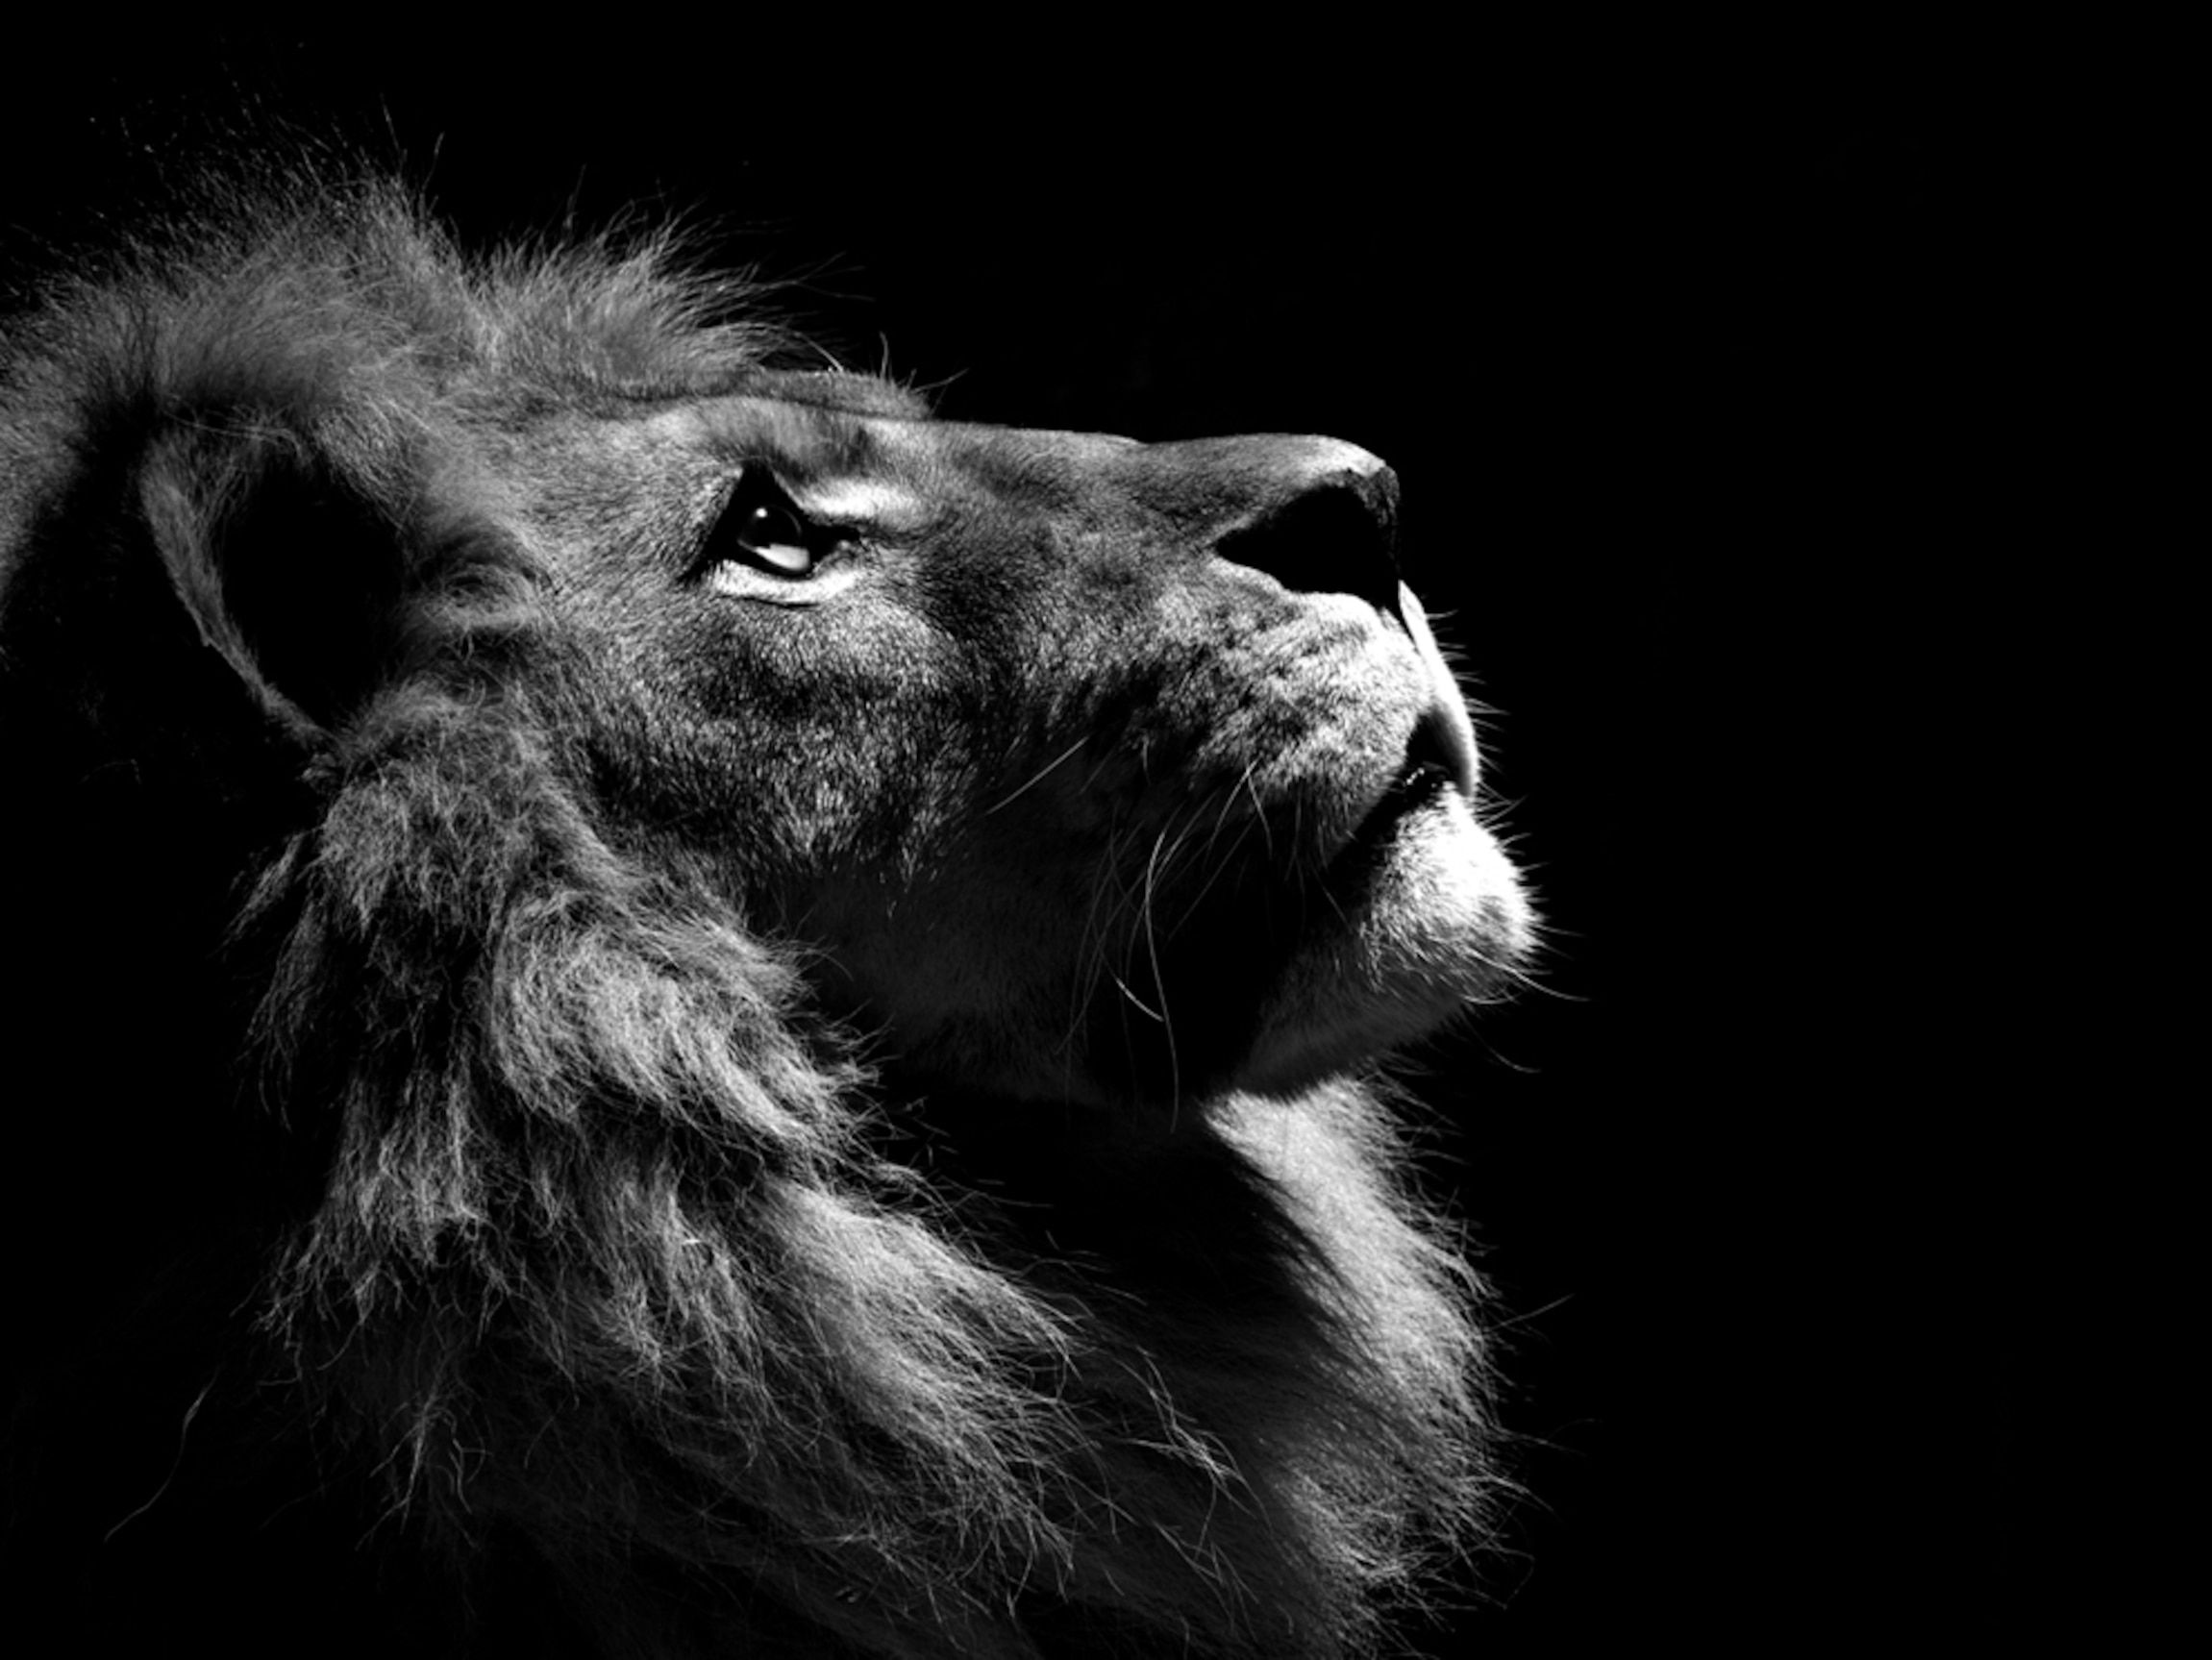 Lion Profile. Lion wallpaper, Black and white lion, Lion